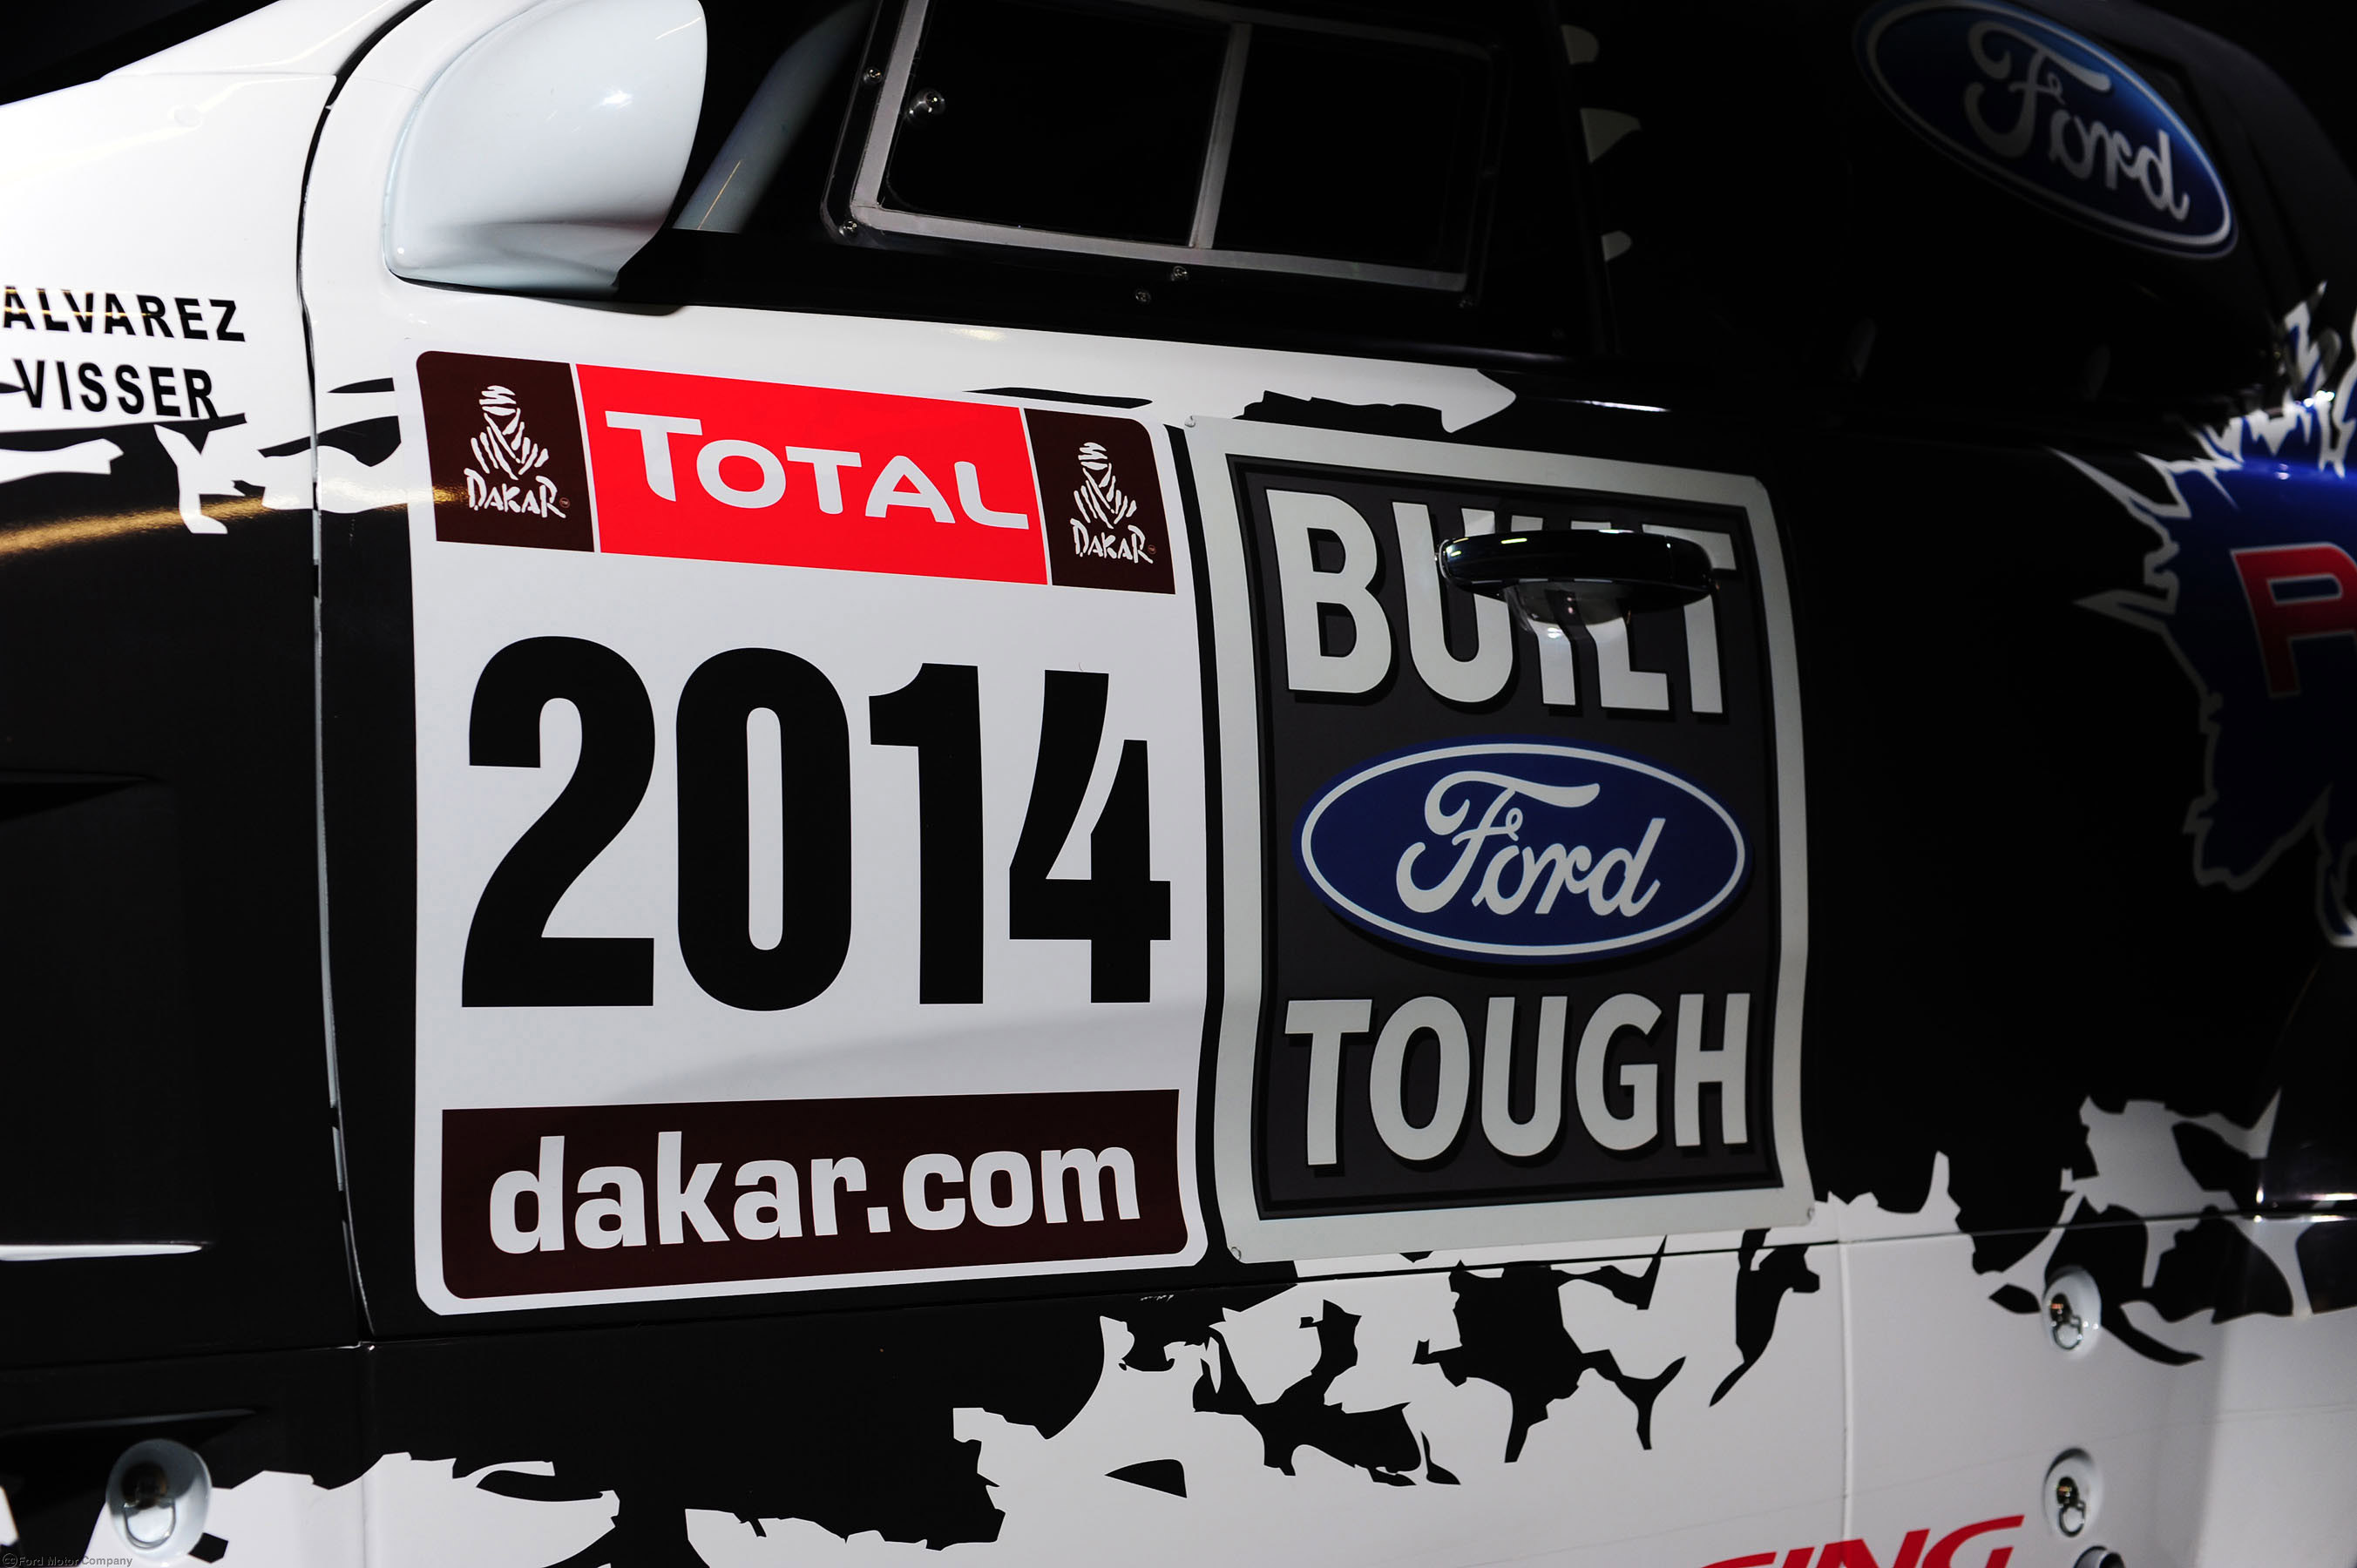 Ford Ranger Dakar Rally